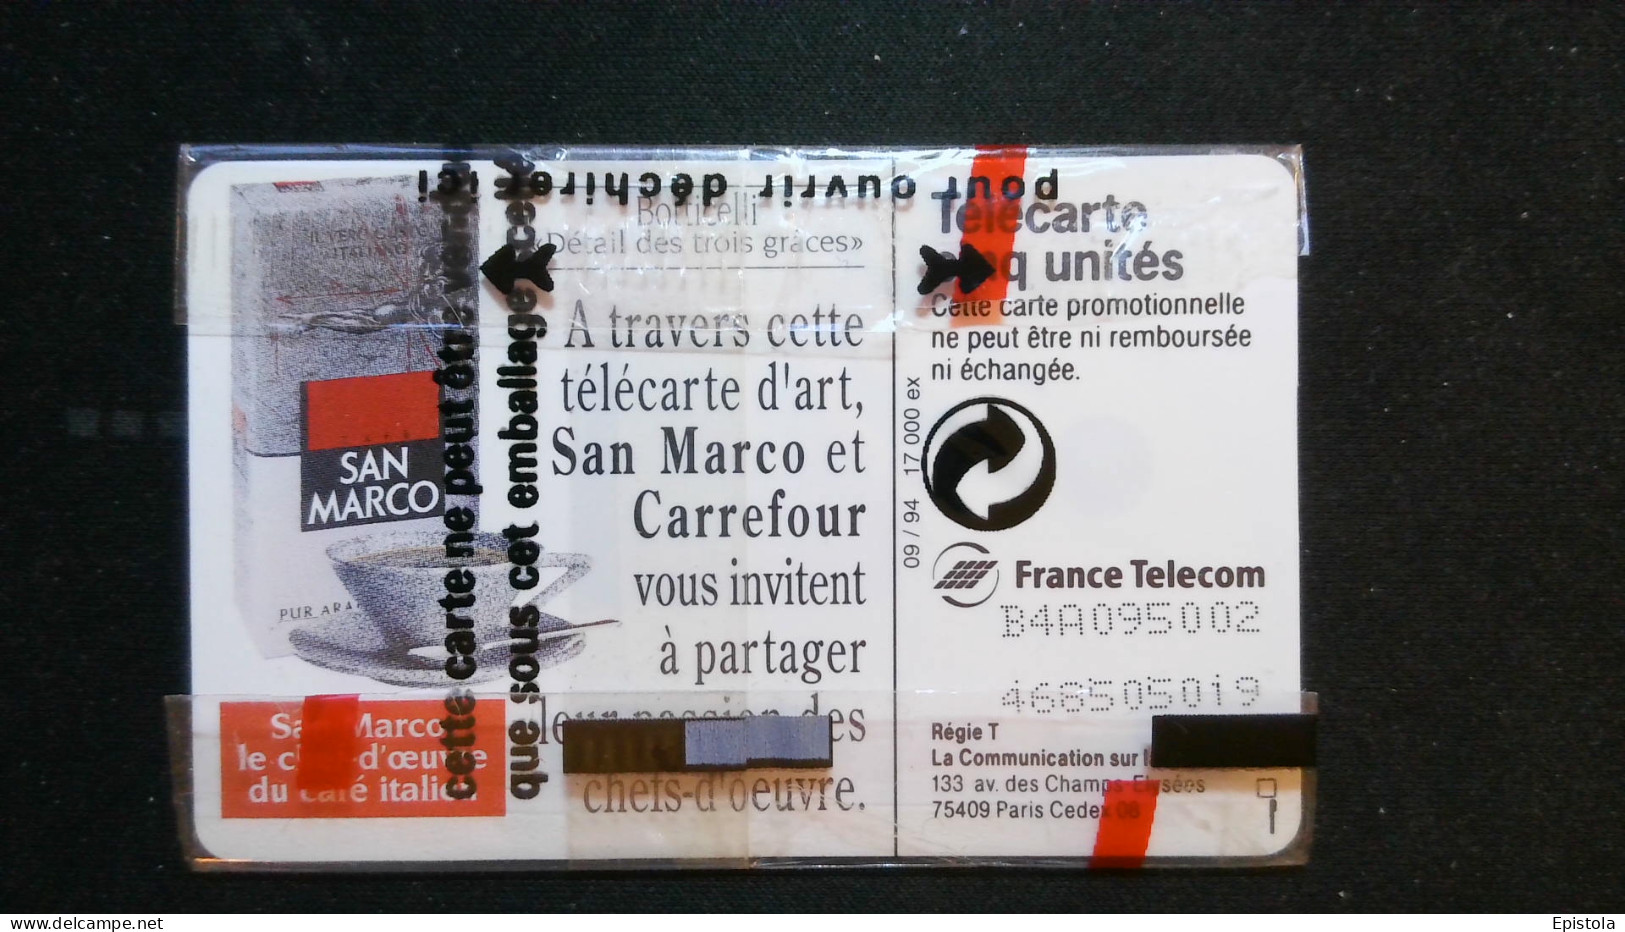 ► Café SAN MARCO   Oeuvre BOTTICELLI  - Télécarte Neuve Sous Blister    5U  -   17 000 Ex - France Telecom - Peinture